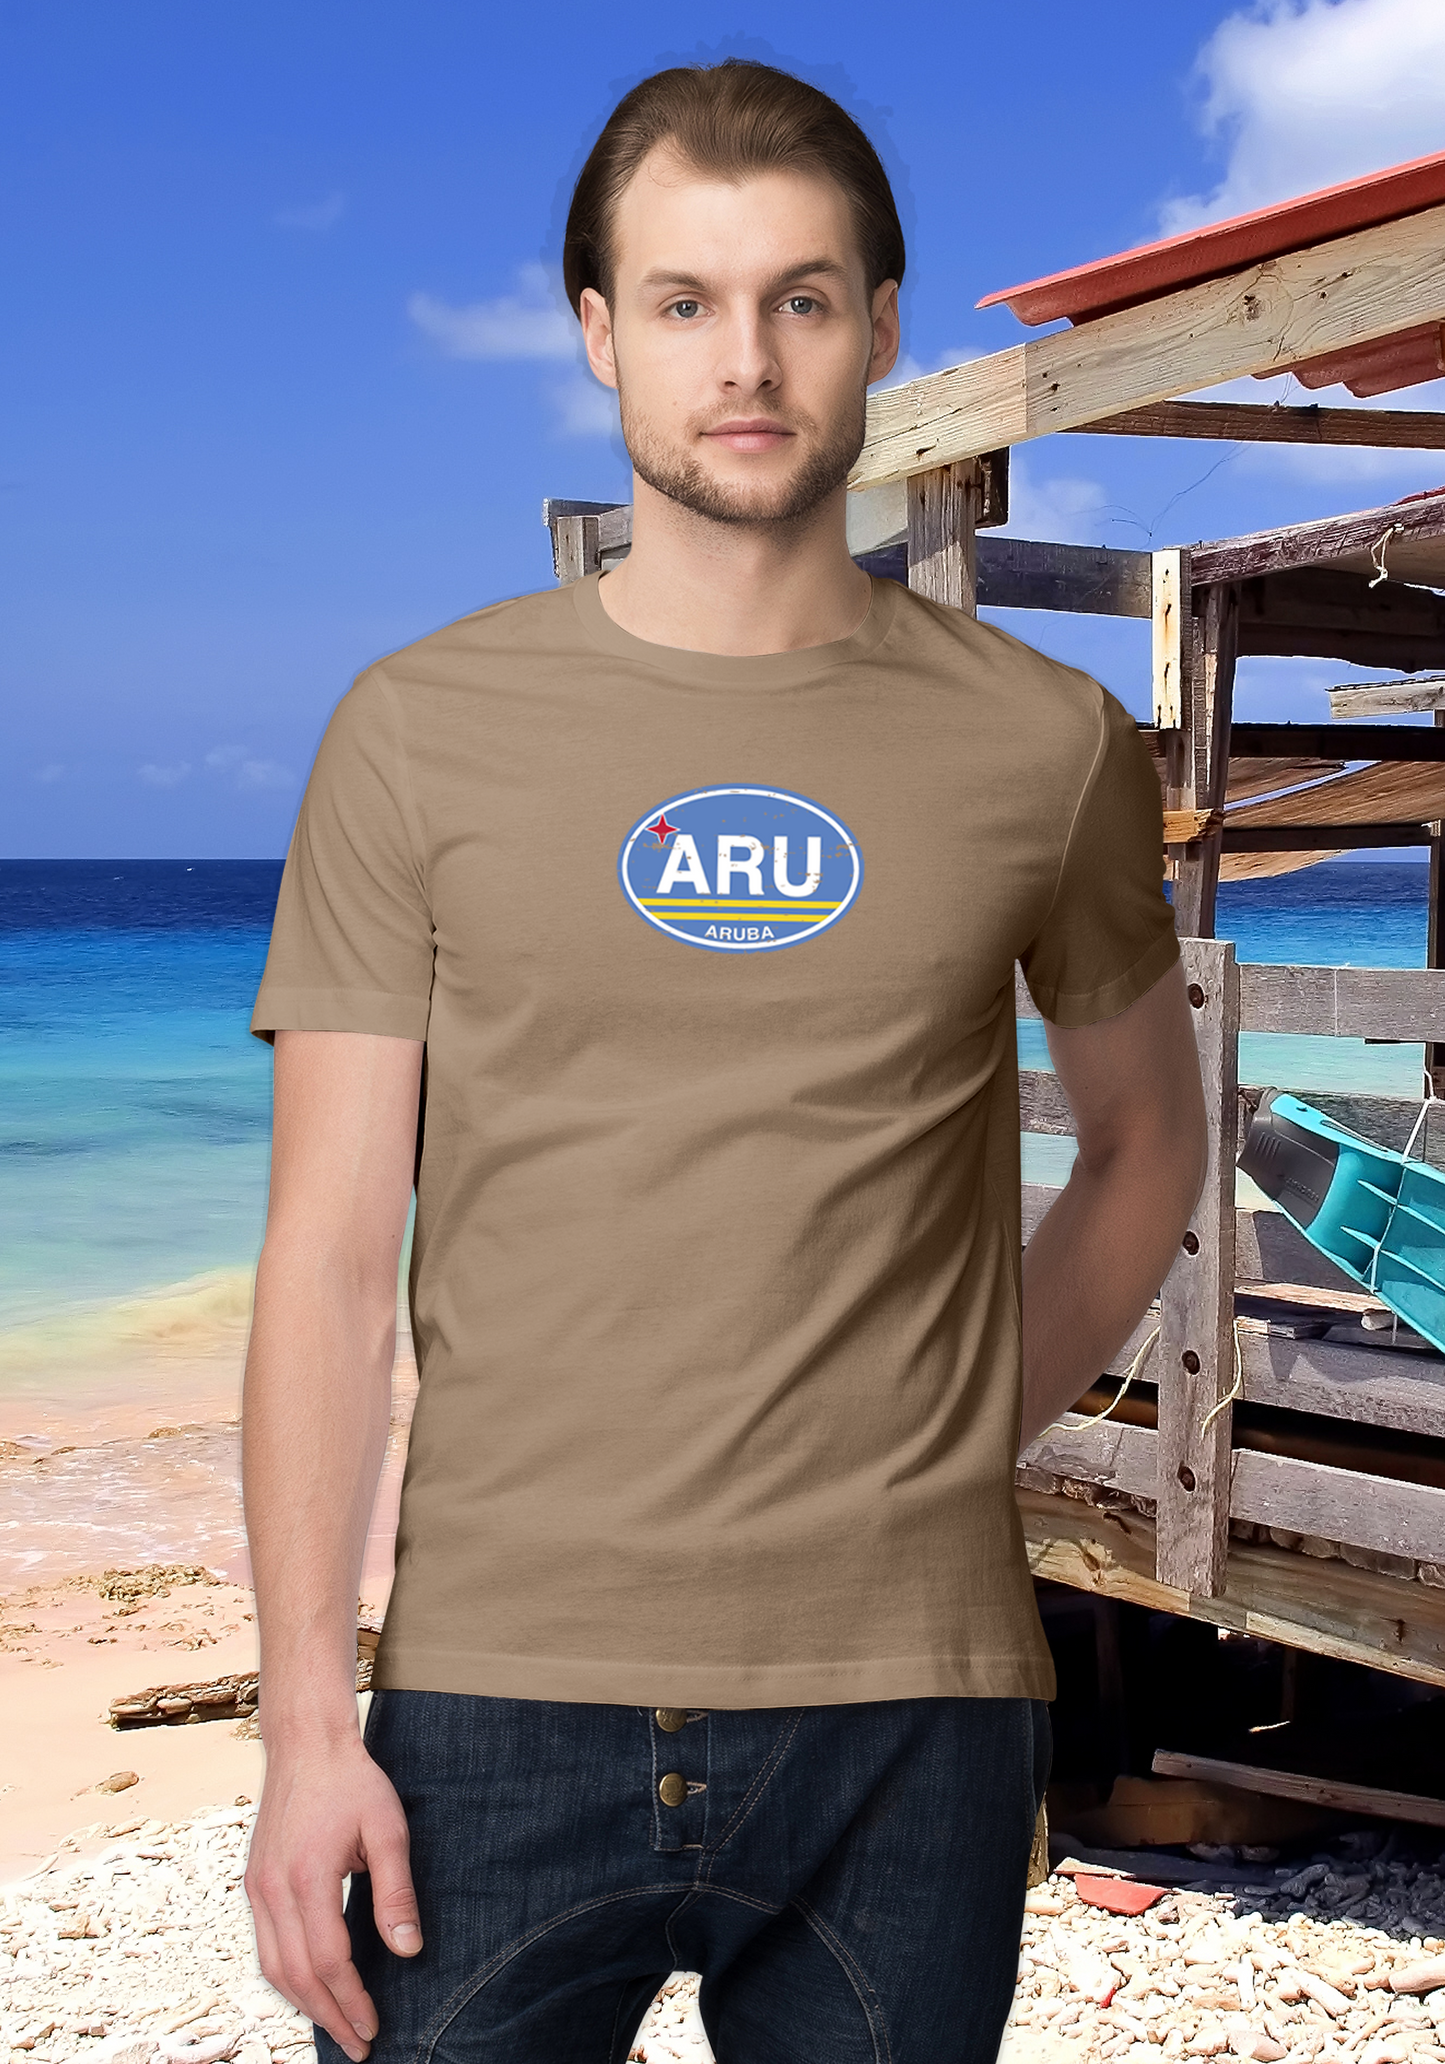 Aruba Men's Flag T-Shirt Souvenirs - My Destination Location